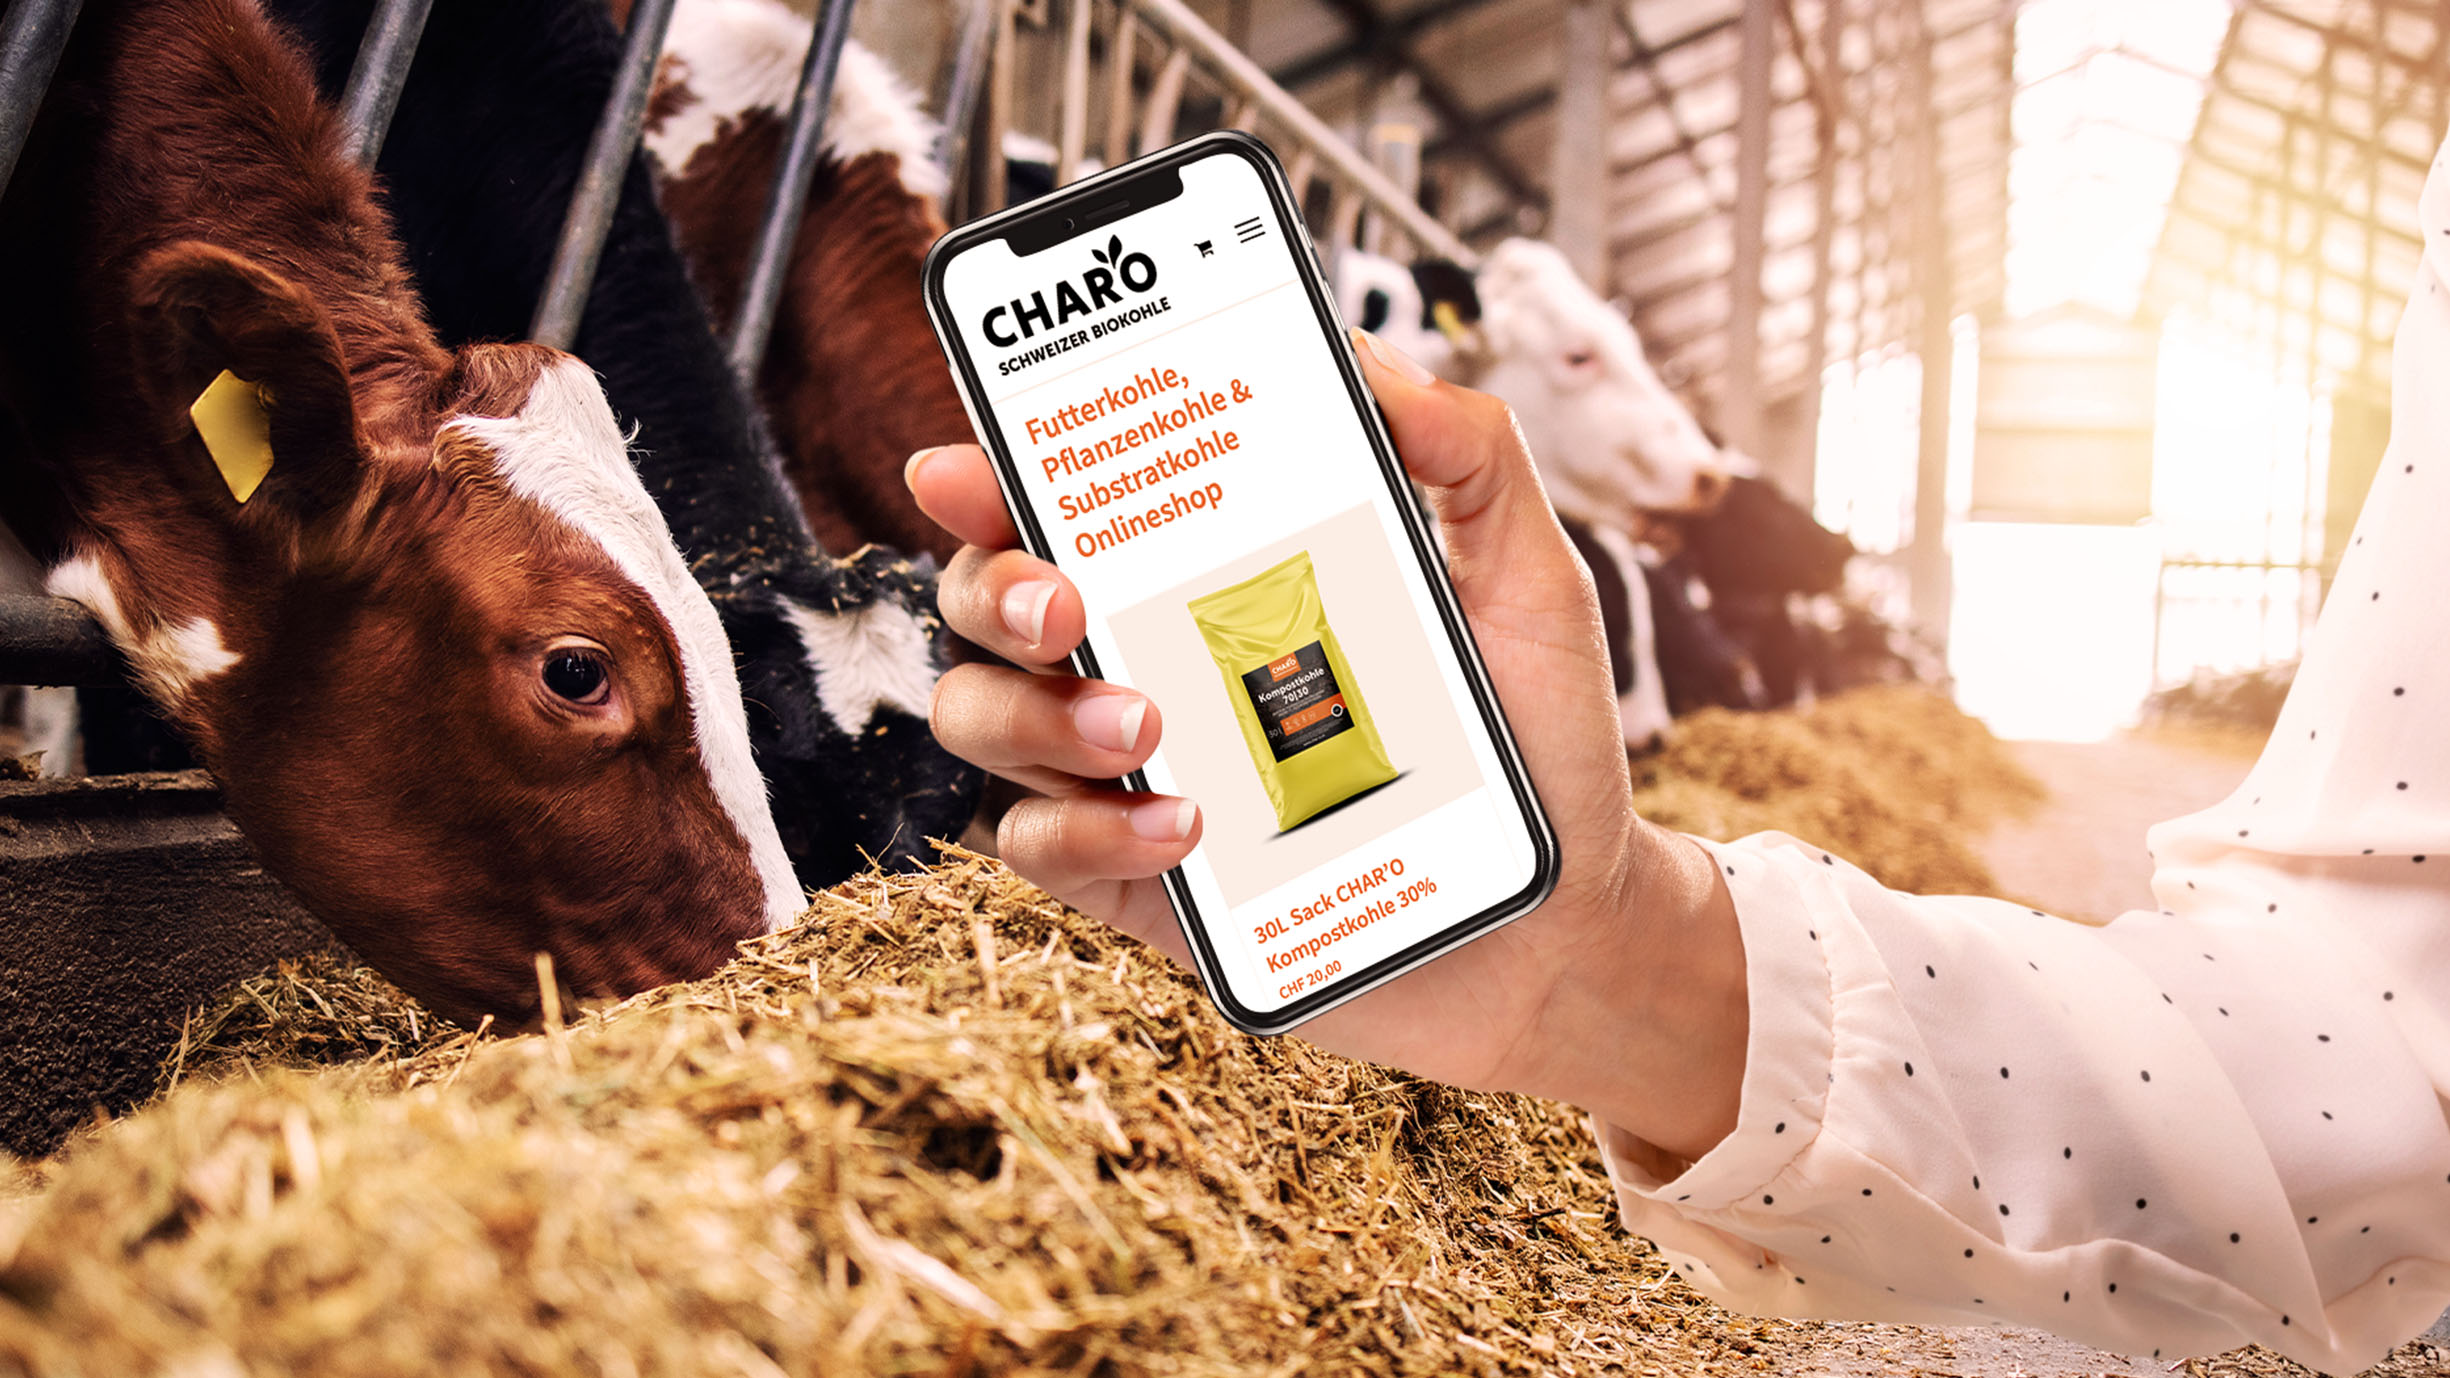 Char'o Website Auf Smartphone Mit Stall Im Hintergrund